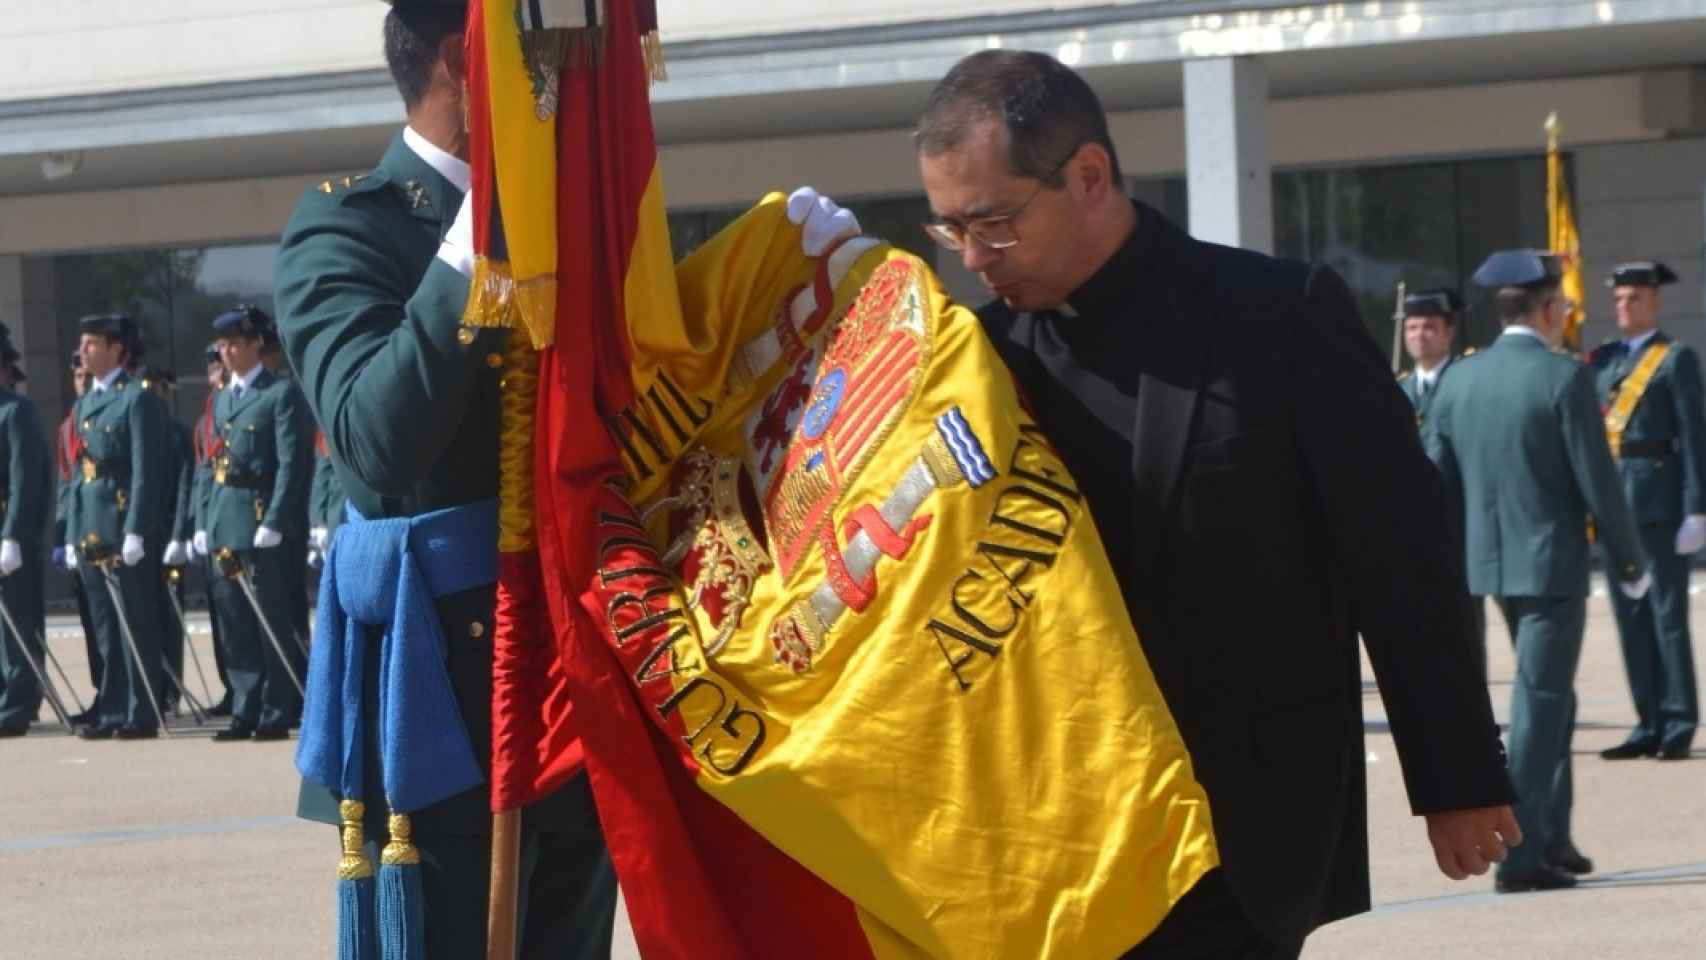 Pablo besa la bandera durante un acto de la Guardia Civil... pero ya siendo sacerdote.